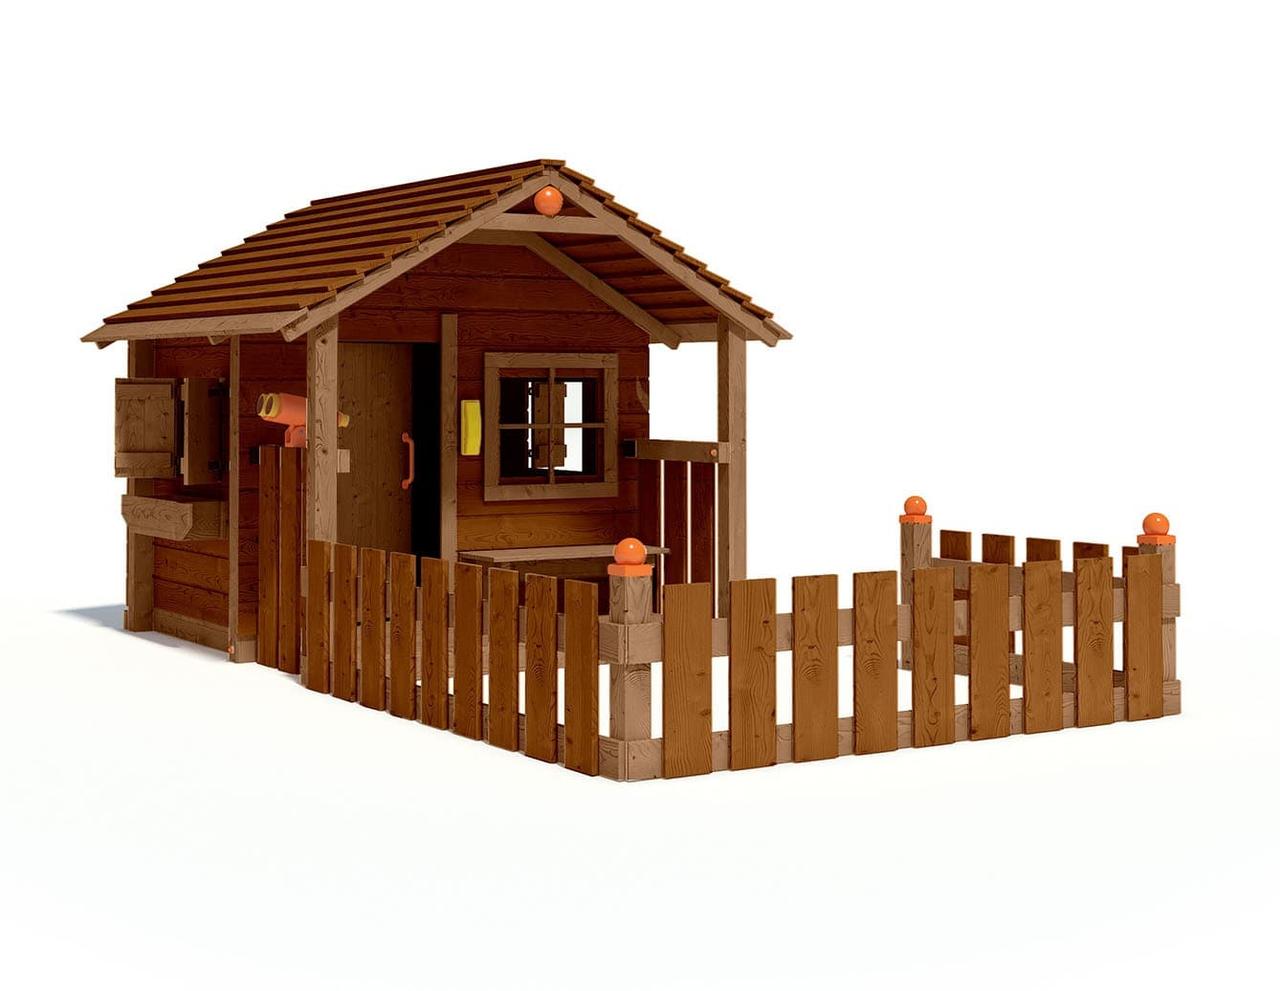 Игровой домик для детей (имитация бруса), фото 1